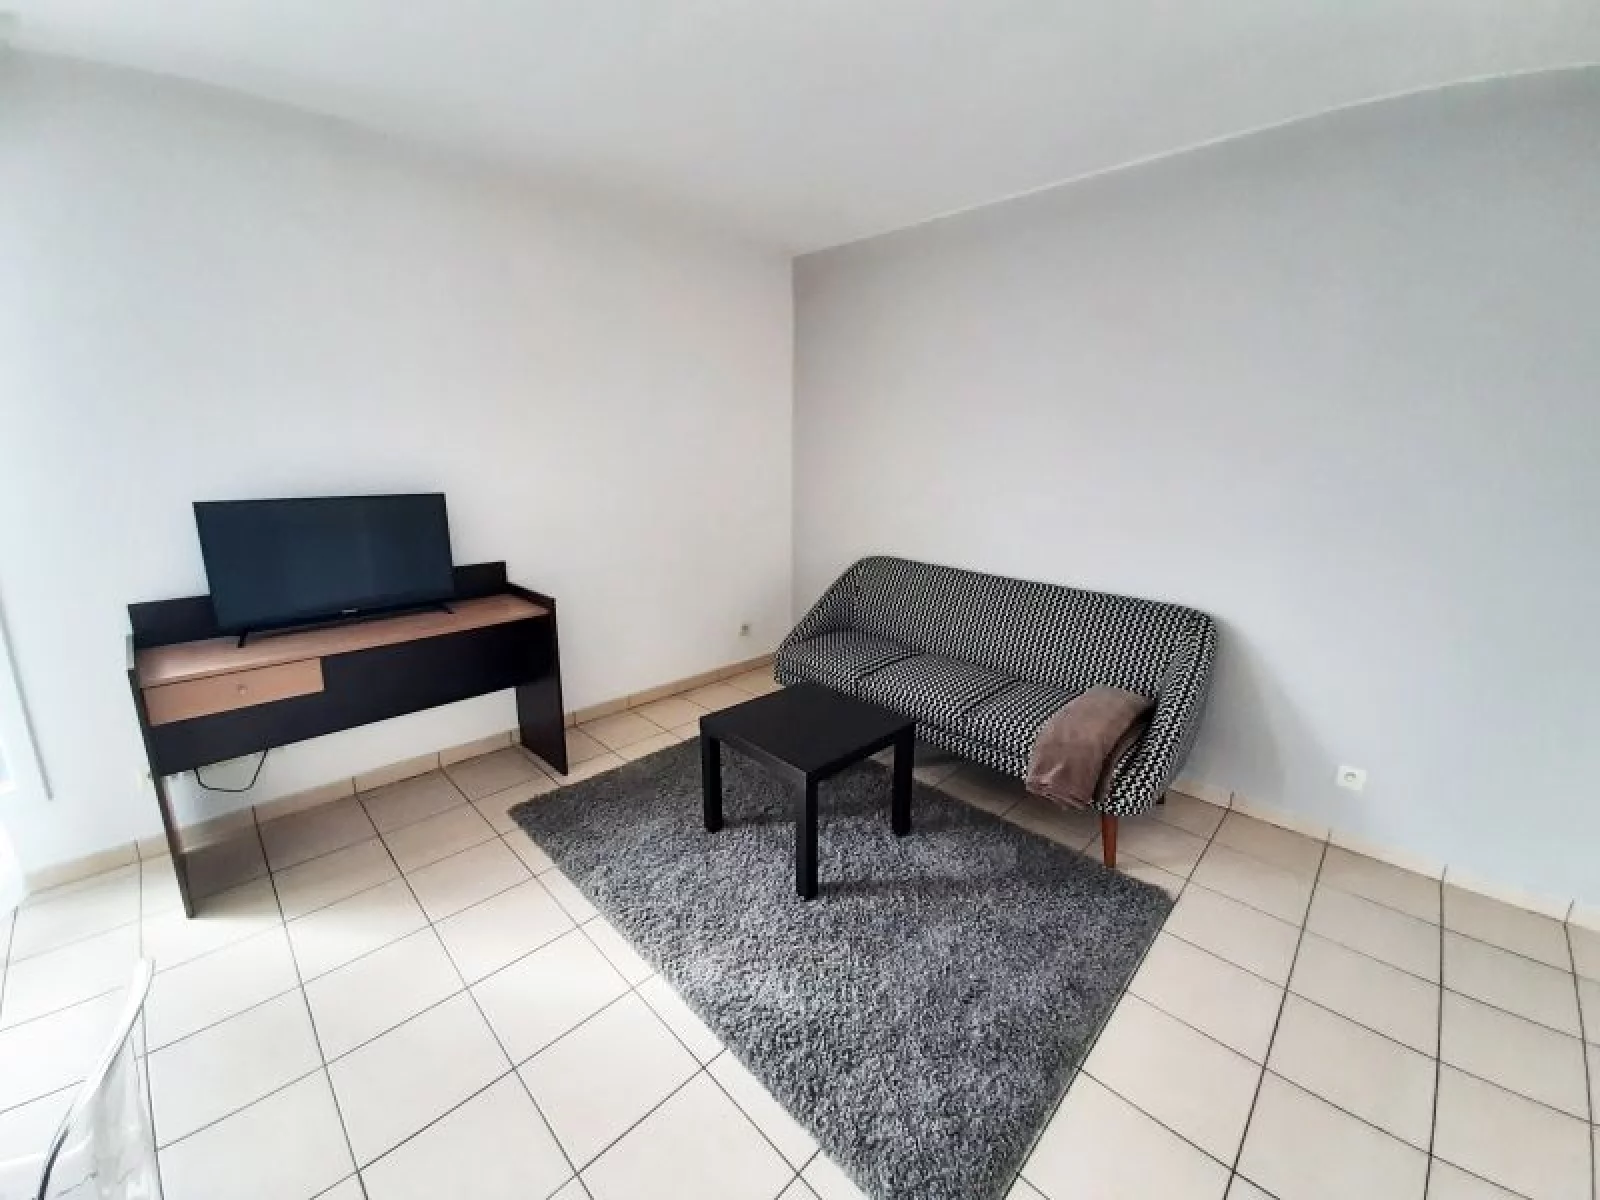 Location appartement meublé 2 pièces 42m² (Paris est - Bry sur Marne)